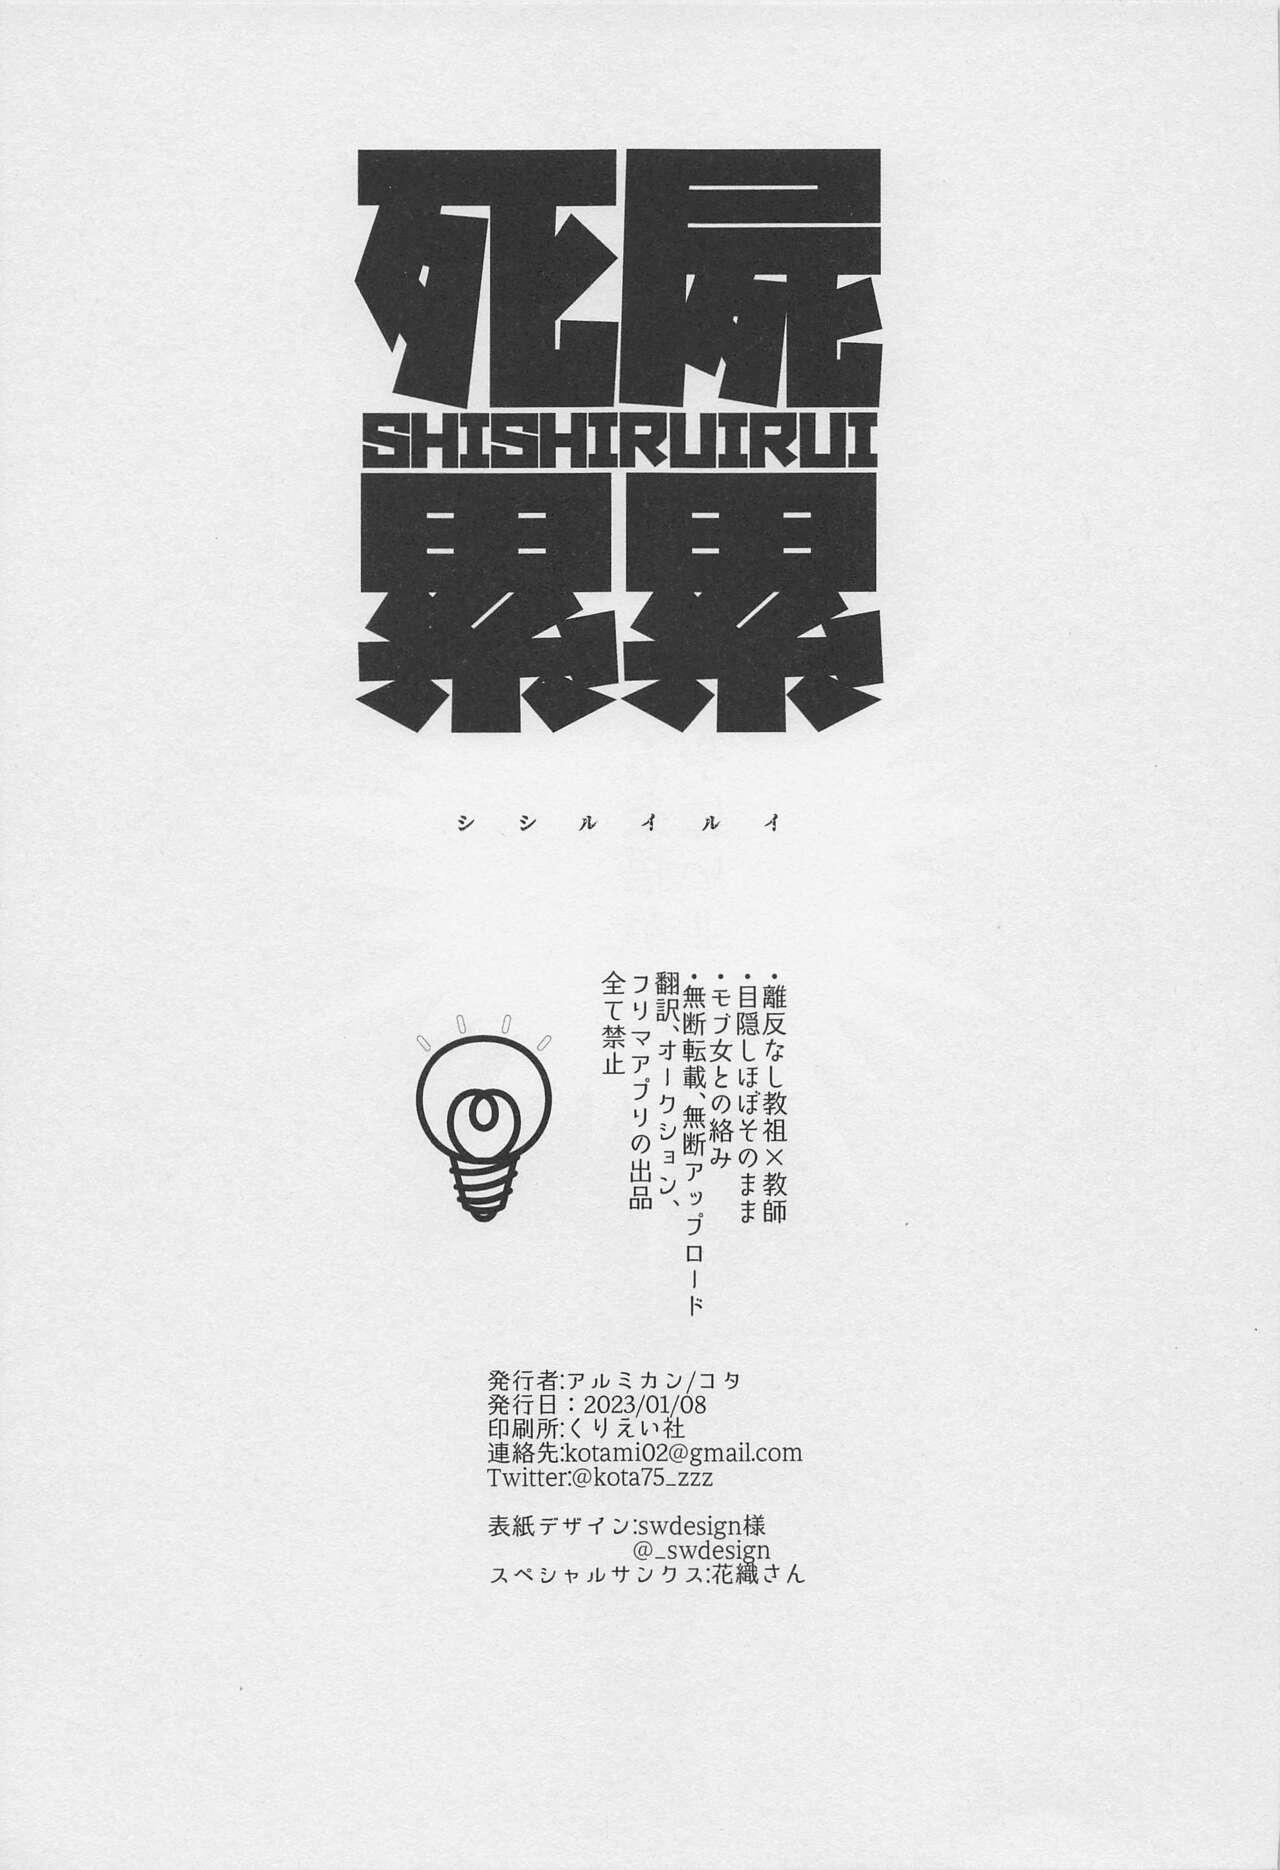 Passivo SHISHIRUIRUI - Jujutsu kaisen Salope - Picture 2